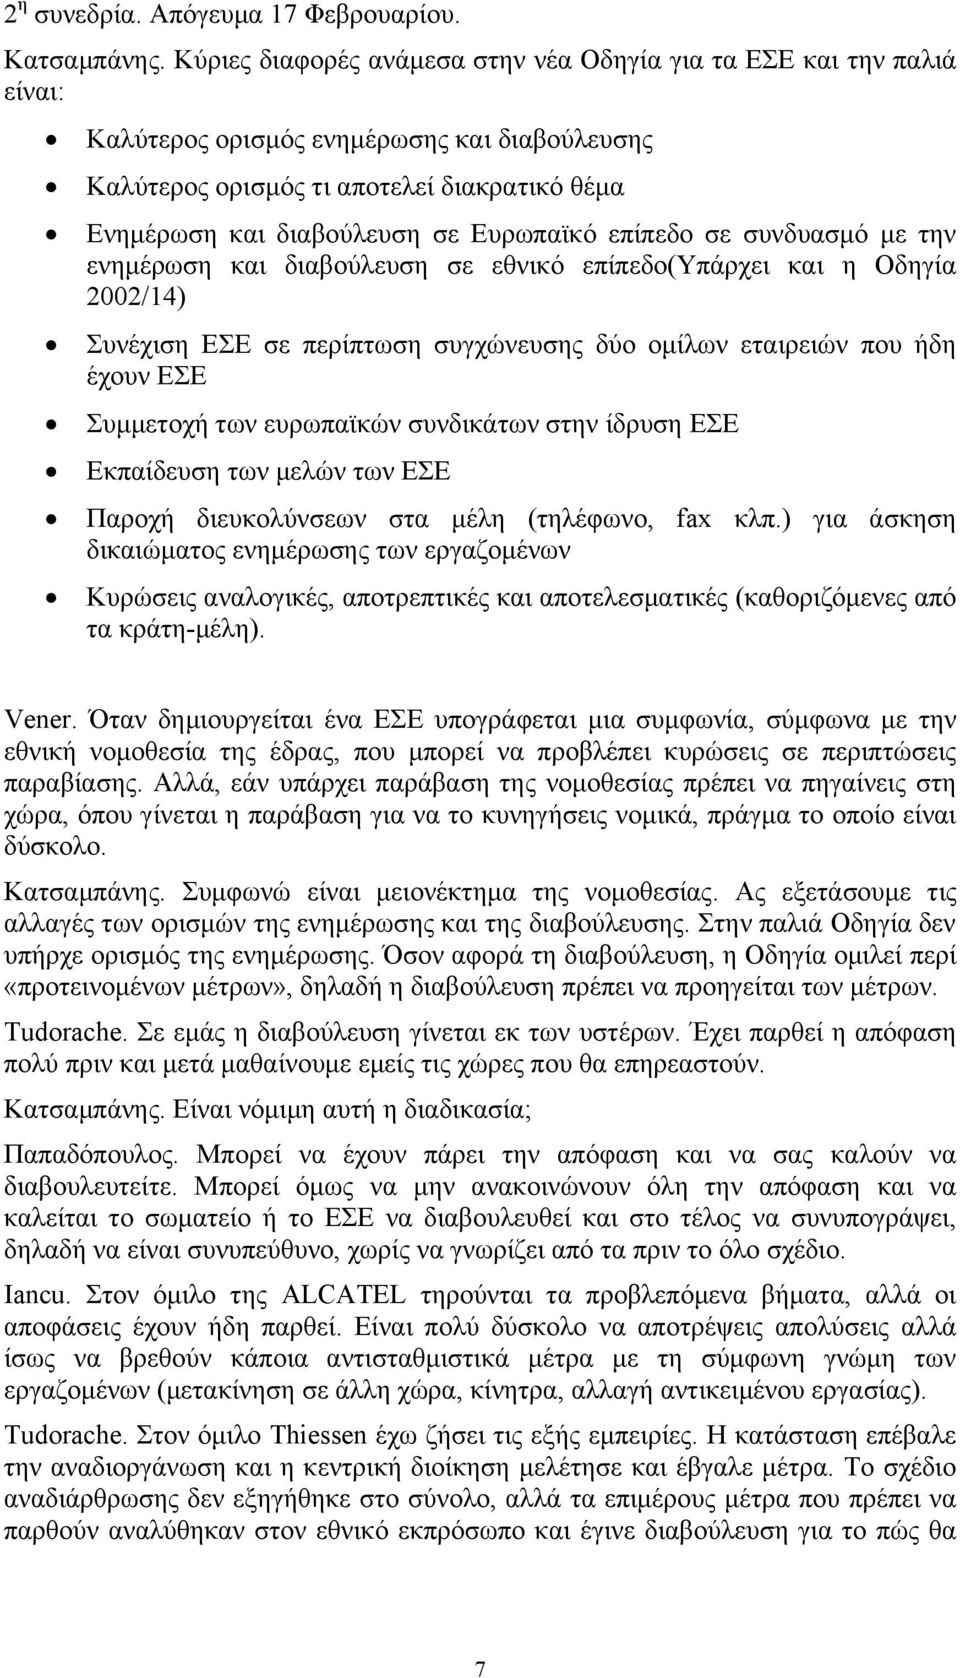 Ευρωπαϊκό επίπεδο σε συνδυασμό με την ενημέρωση και διαβούλευση σε εθνικό επίπεδο(υπάρχει και η Οδηγία 2002/14) Συνέχιση ΕΣΕ σε περίπτωση συγχώνευσης δύο ομίλων εταιρειών που ήδη έχουν ΕΣΕ Συμμετοχή